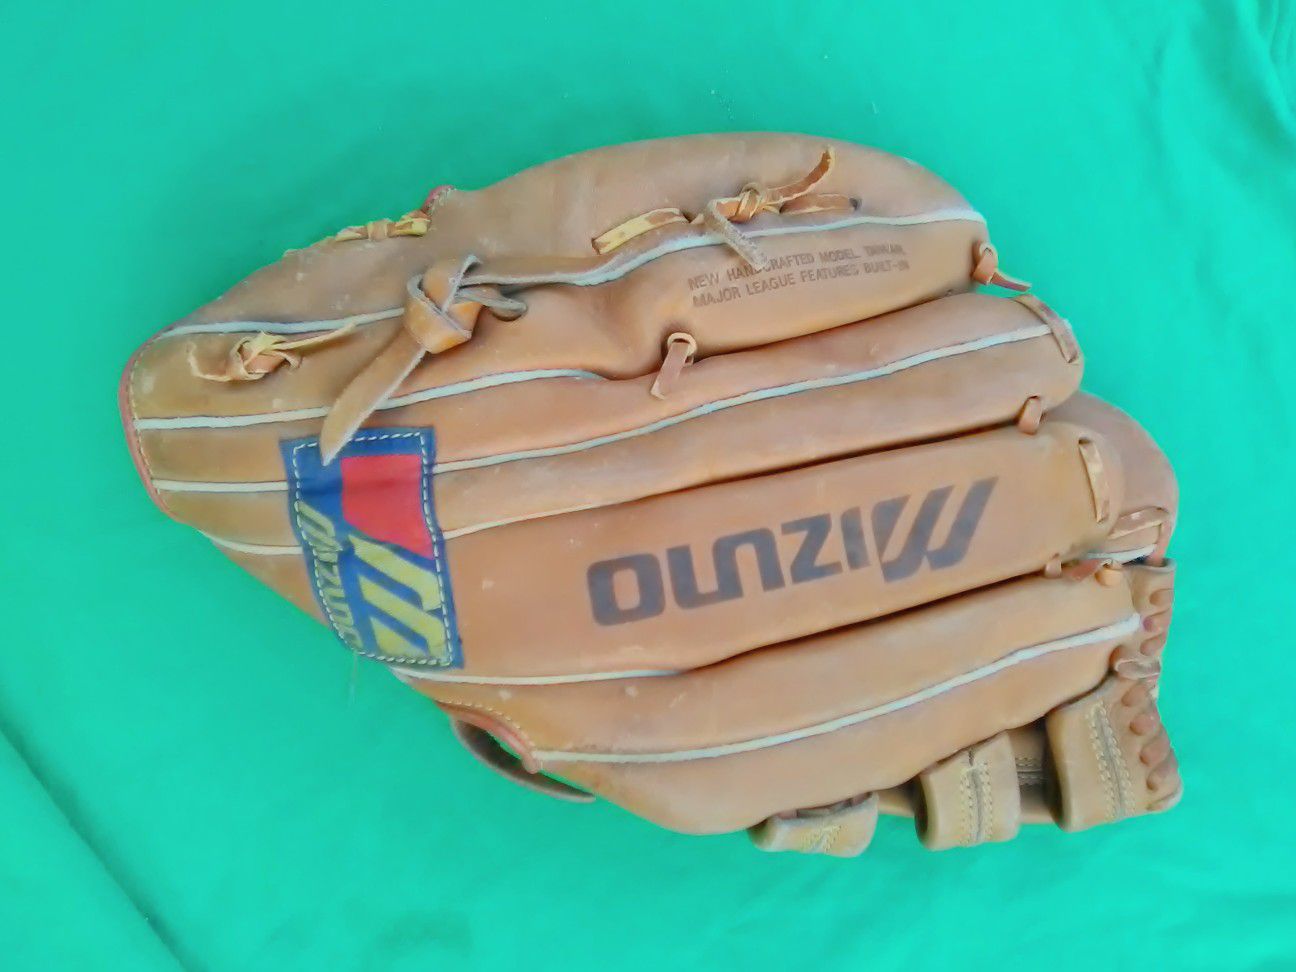 Baseball and softball glove